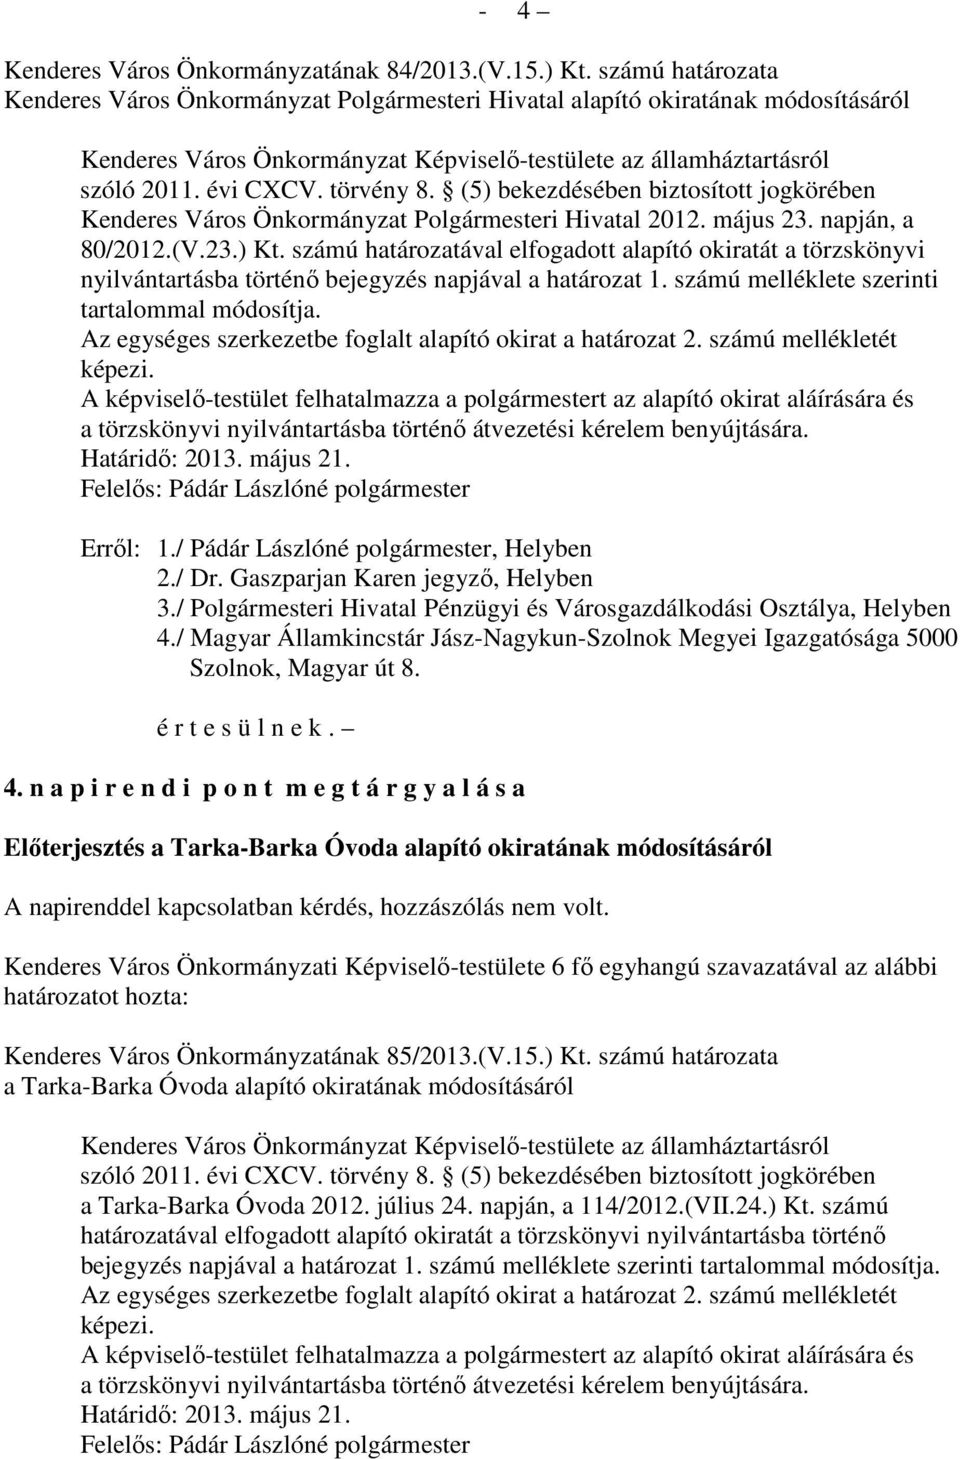 törvény 8. (5) bekezdésében biztosított jogkörében Kenderes Város Önkormányzat Polgármesteri Hivatal 2012. május 23. napján, a 80/2012.(V.23.) Kt.